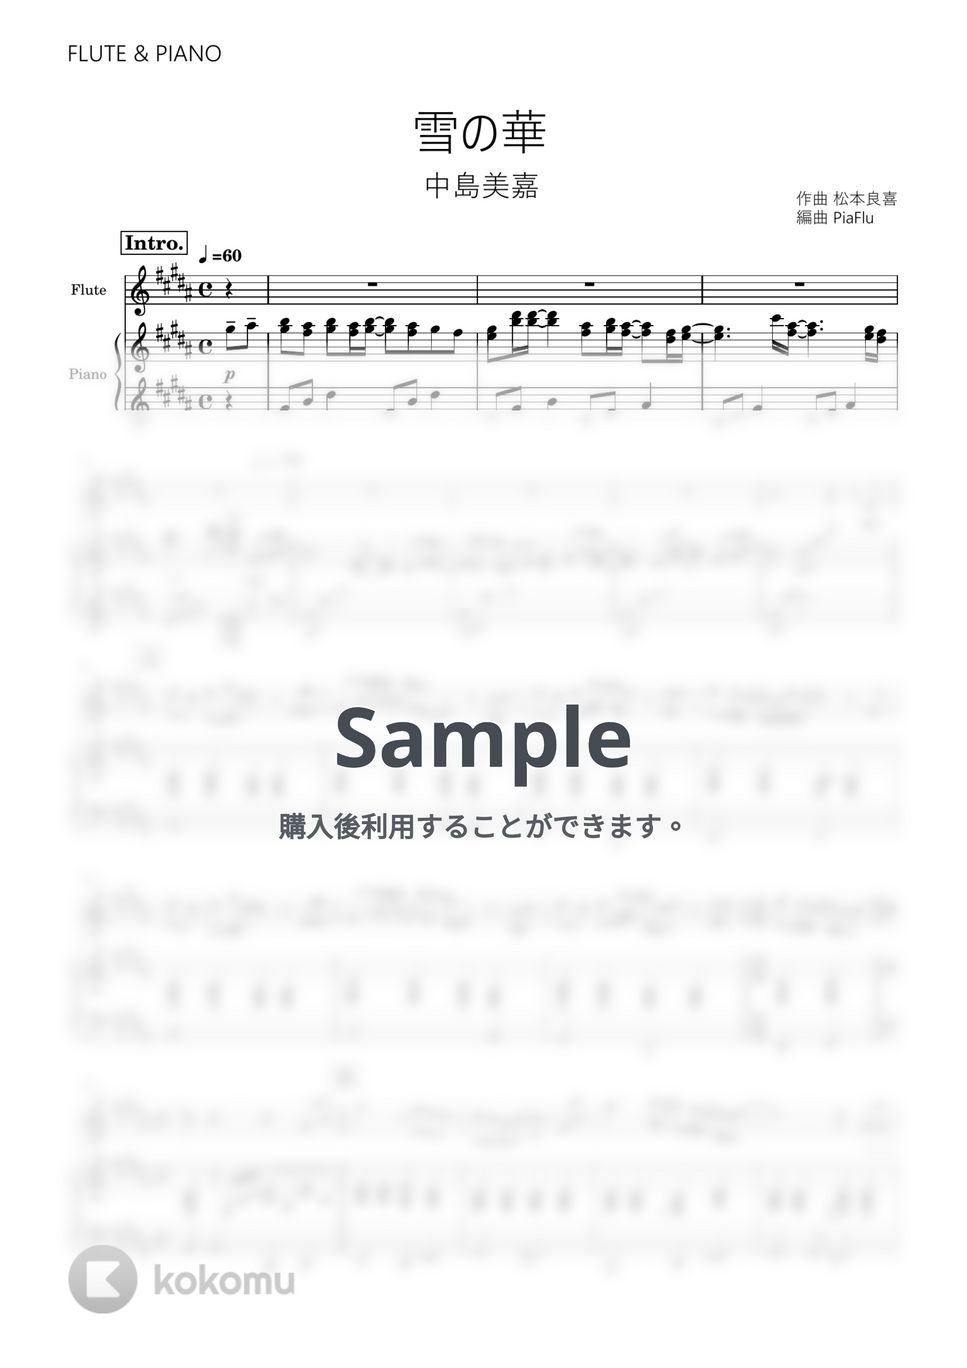 中島美嘉 - 雪の華 (フルート&ピアノ伴奏) by PiaFlu